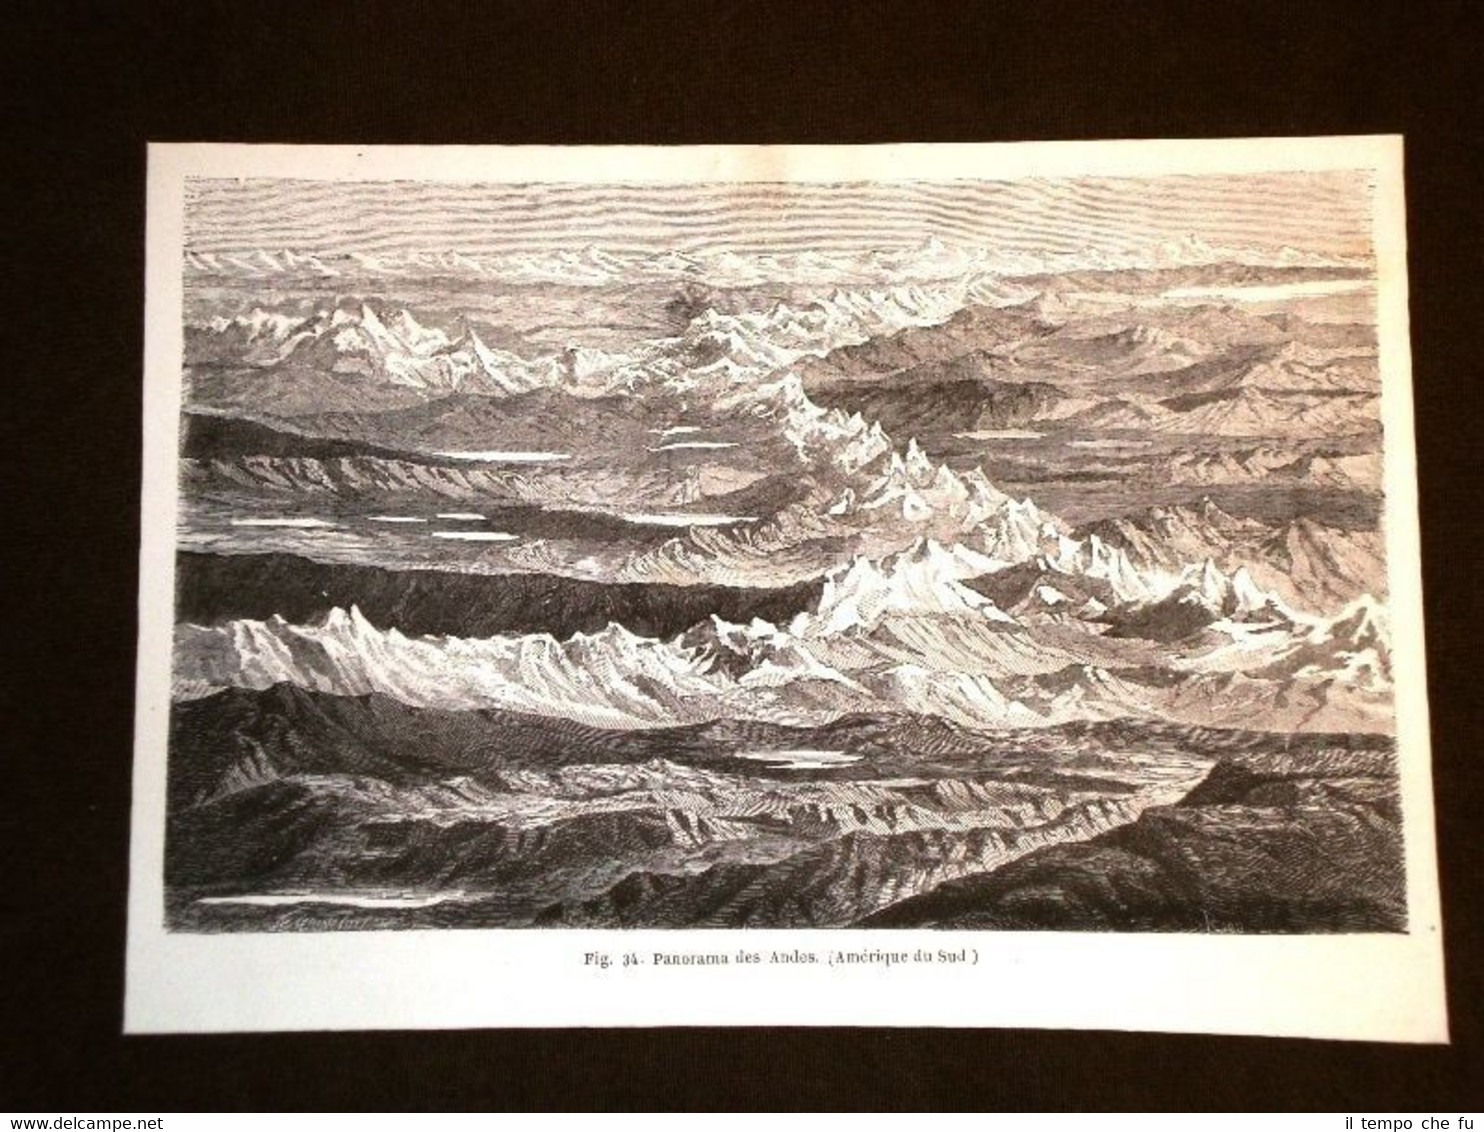 Panorama delle Ande nel 1864 America del Sud o Sudamerica